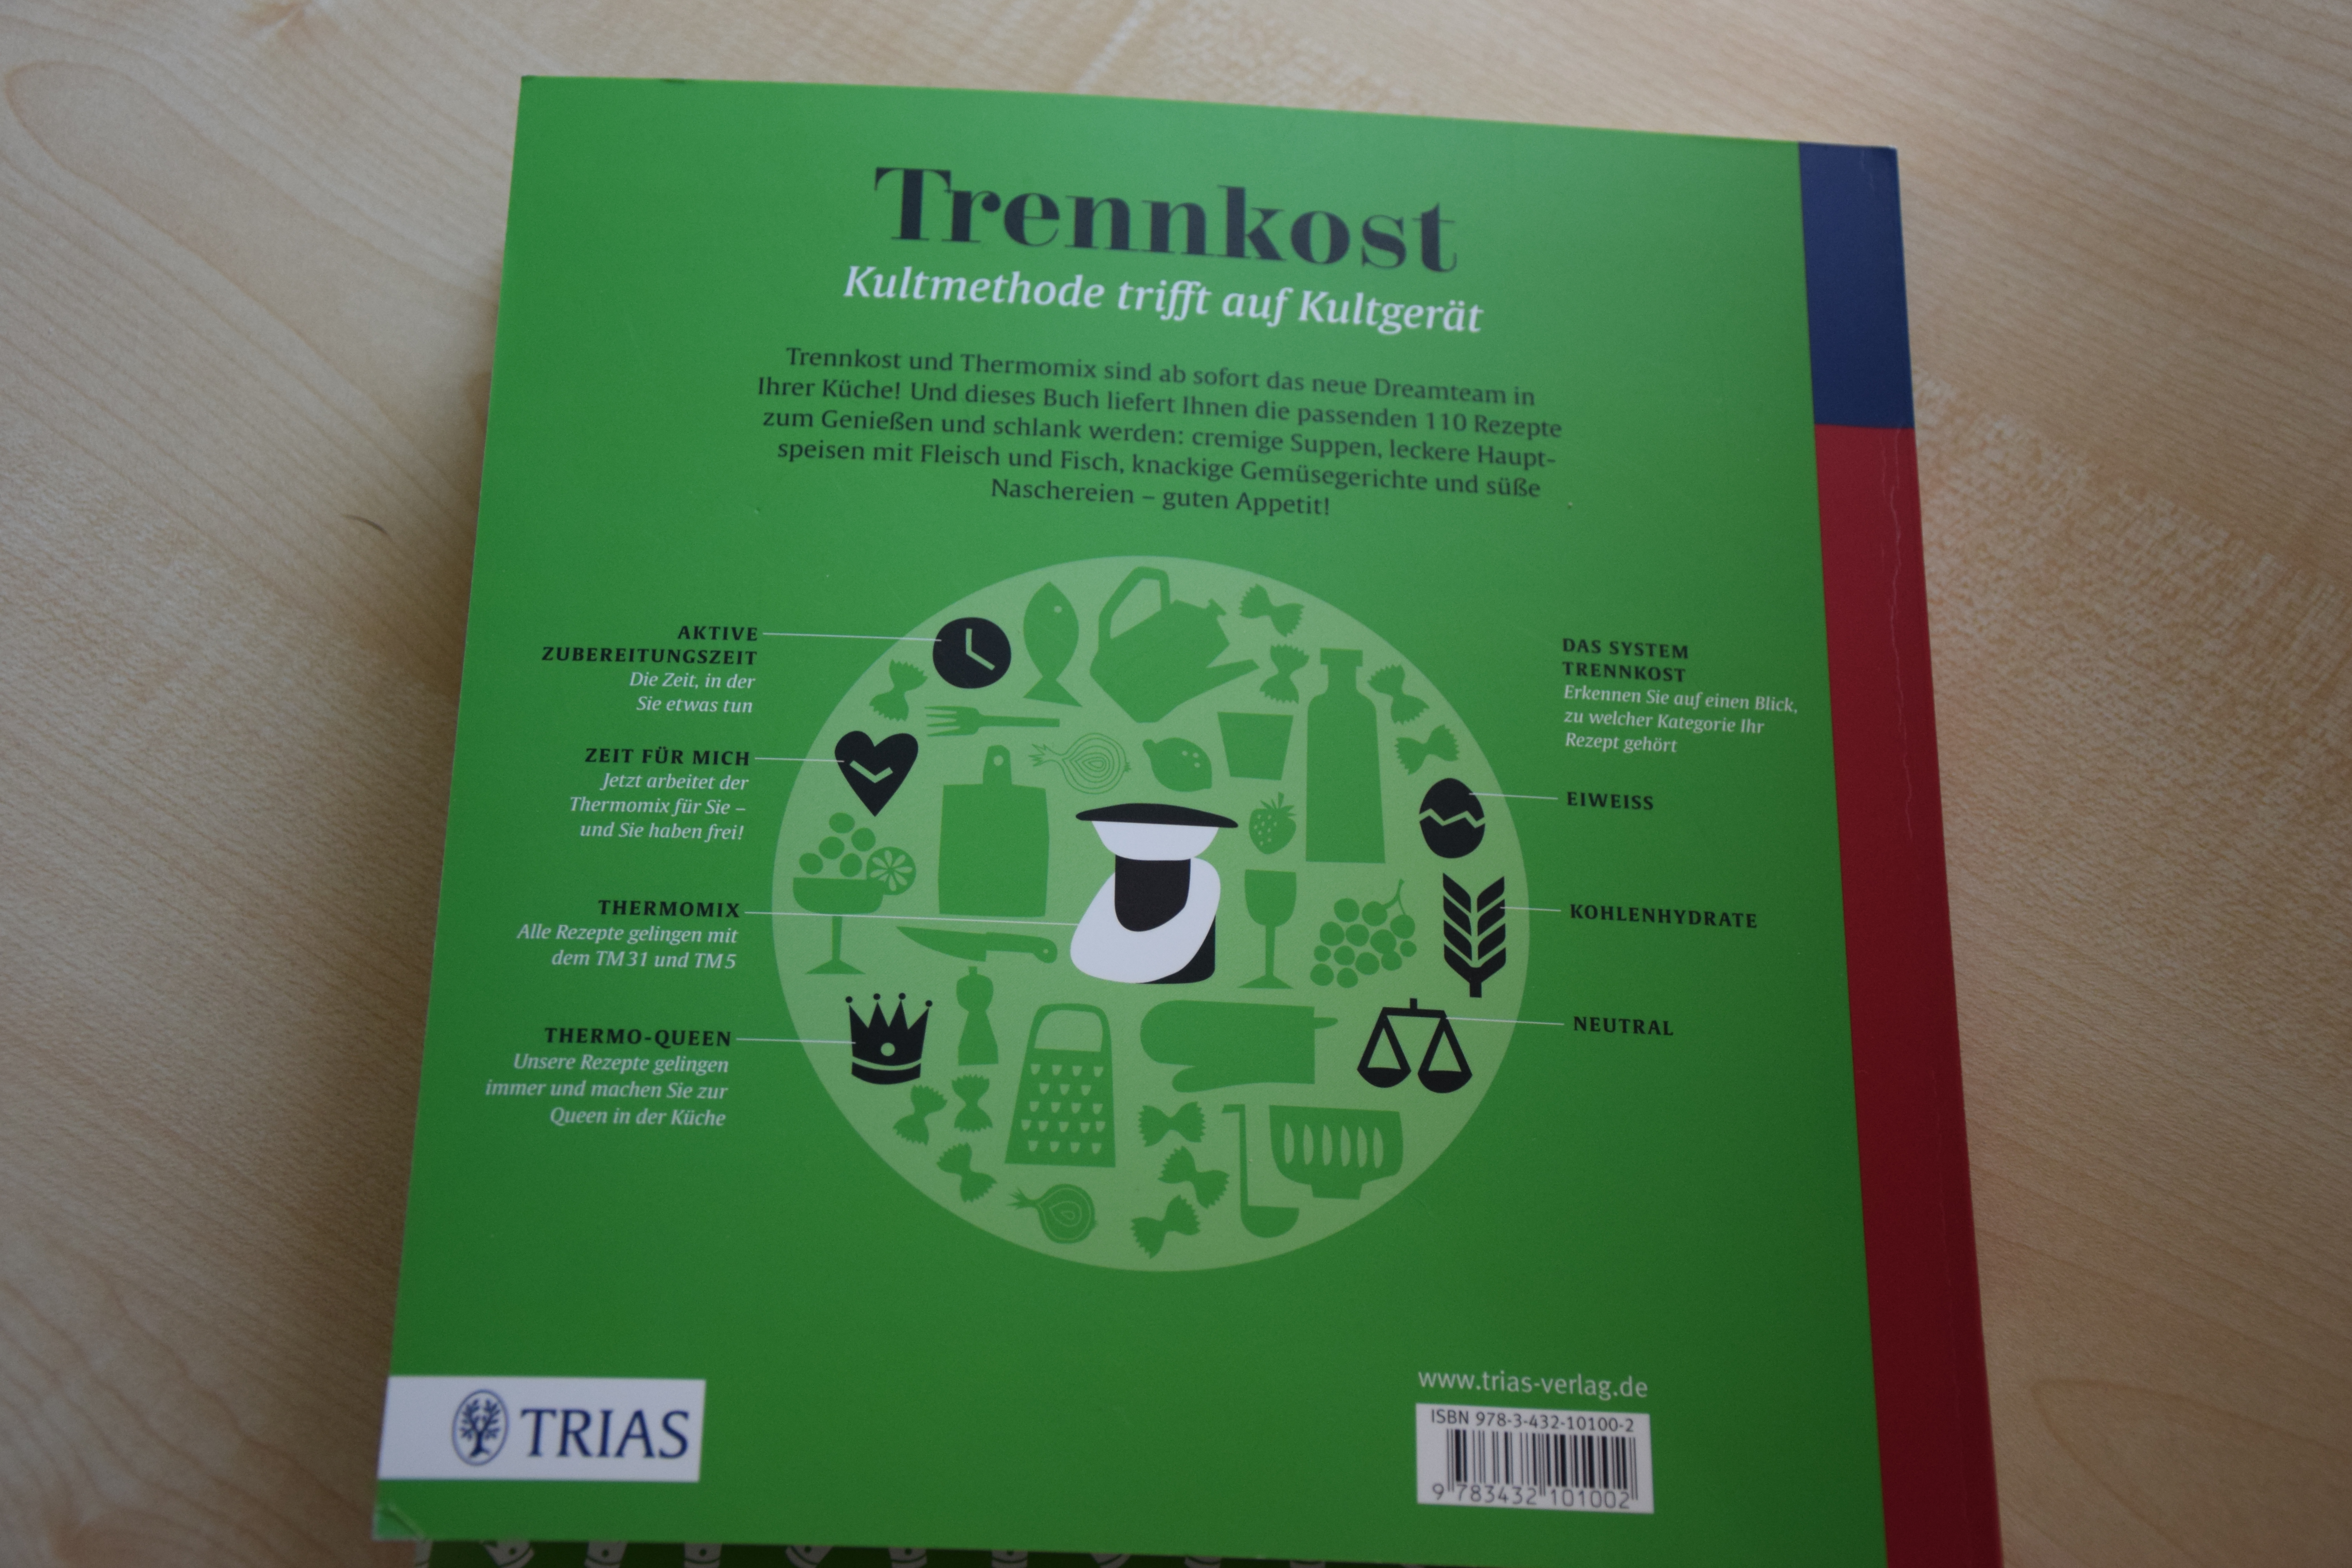 Trennkost- Ursula Summ Trias Verlag